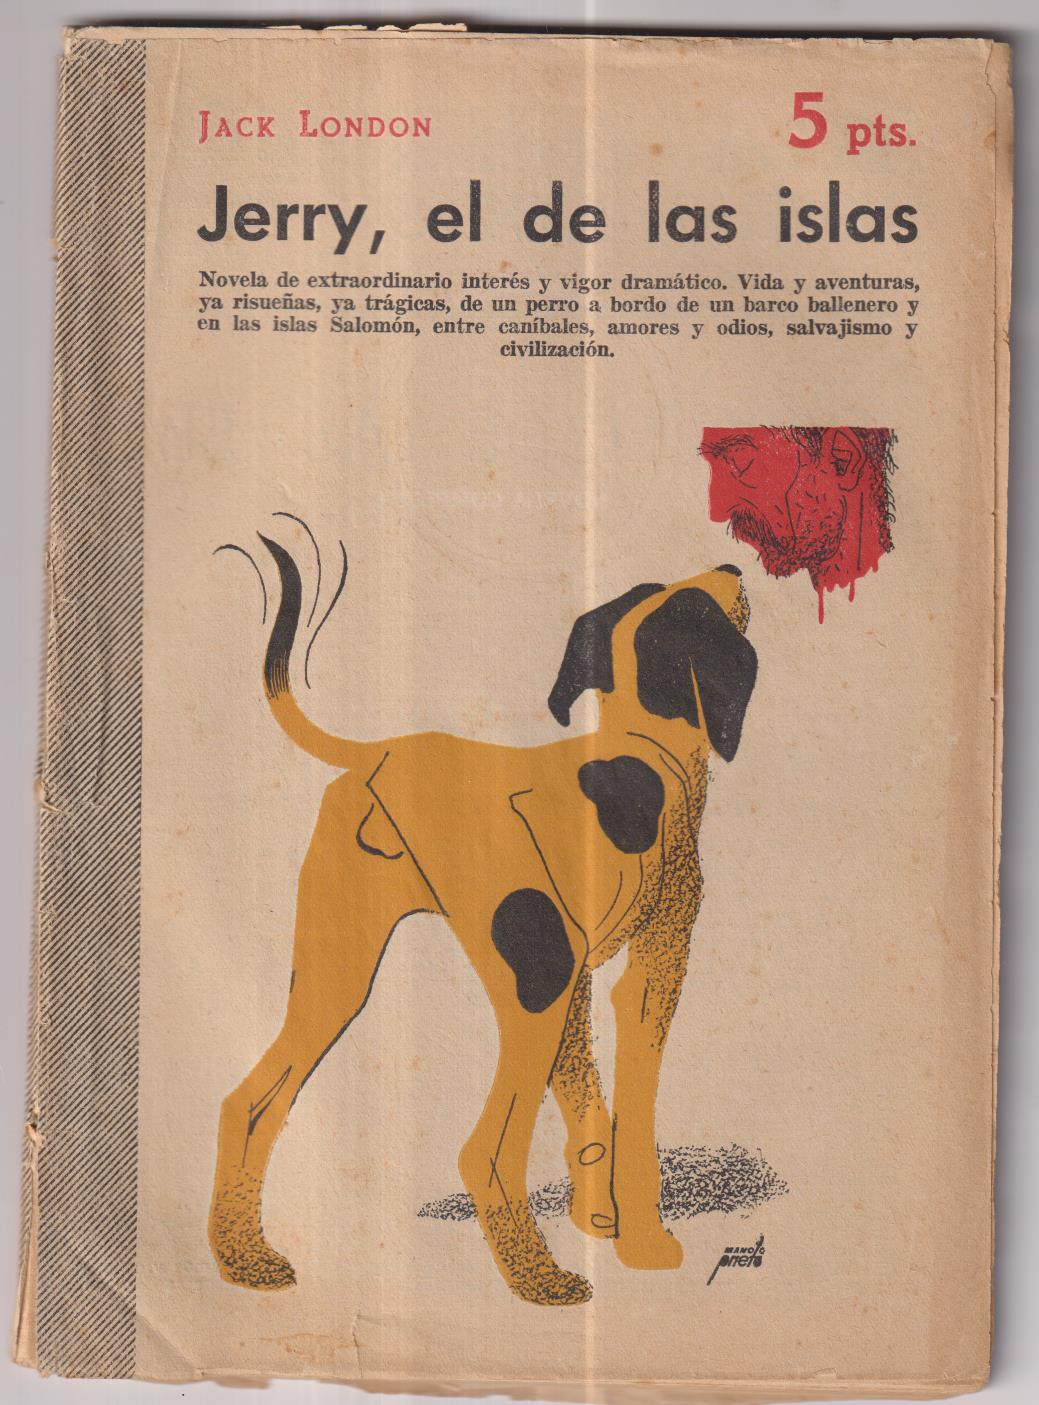 Revista Literaria Novelas y Cuentos nº 1273. Jack London. Jerry, el de las Islas. año 1955